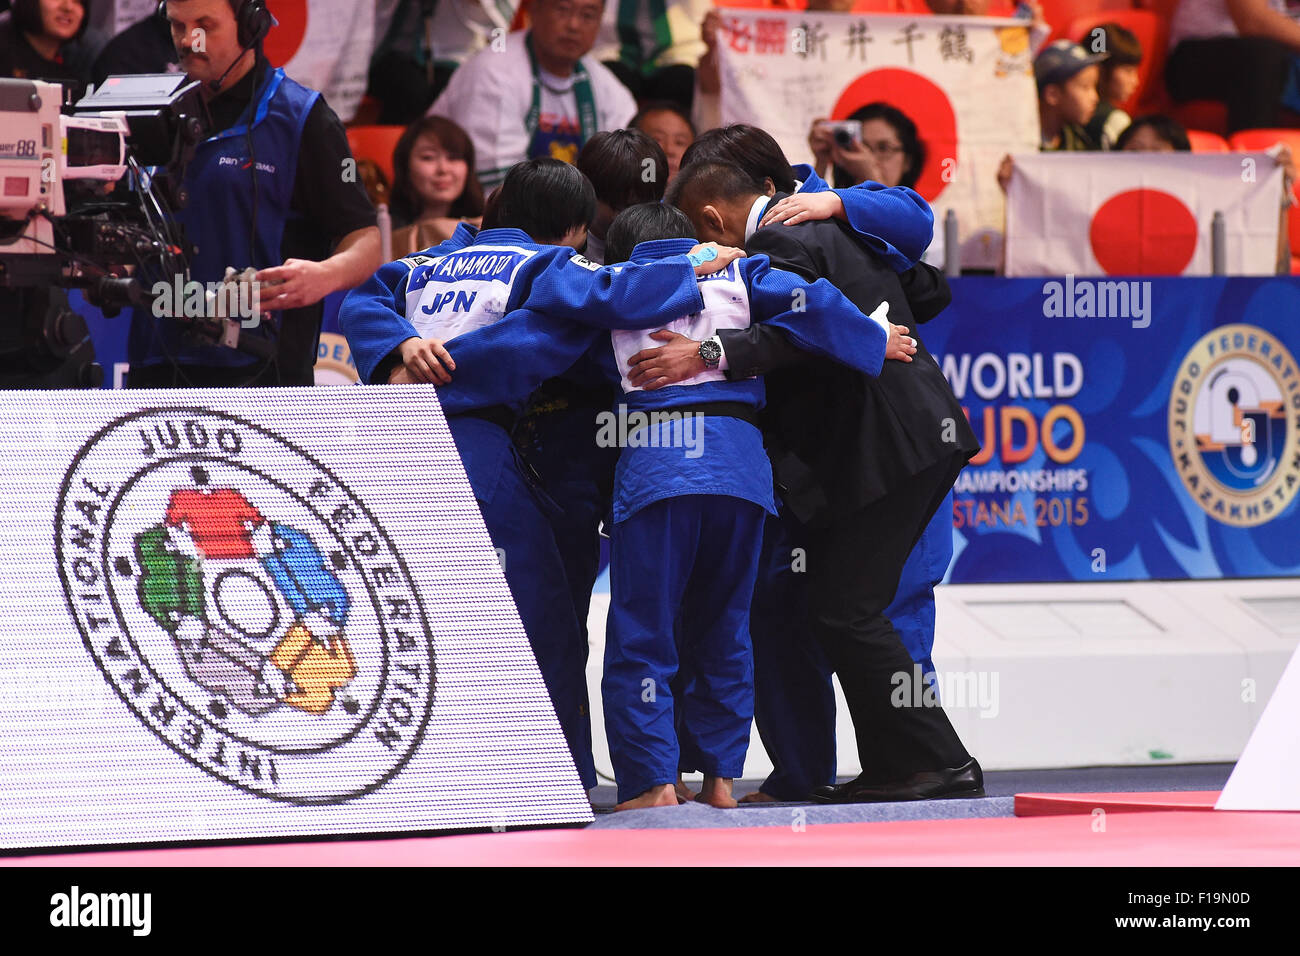 L'équipe féminine du Japon (JPN), groupe 30 AOÛT 2015 - Judo : le championnat du monde de judo l'équipe Astana 2015 Femmes match final à l'ALAU Ice Palace à Astana, Kazakhstan. (Photo par AFLO SPORT) Banque D'Images